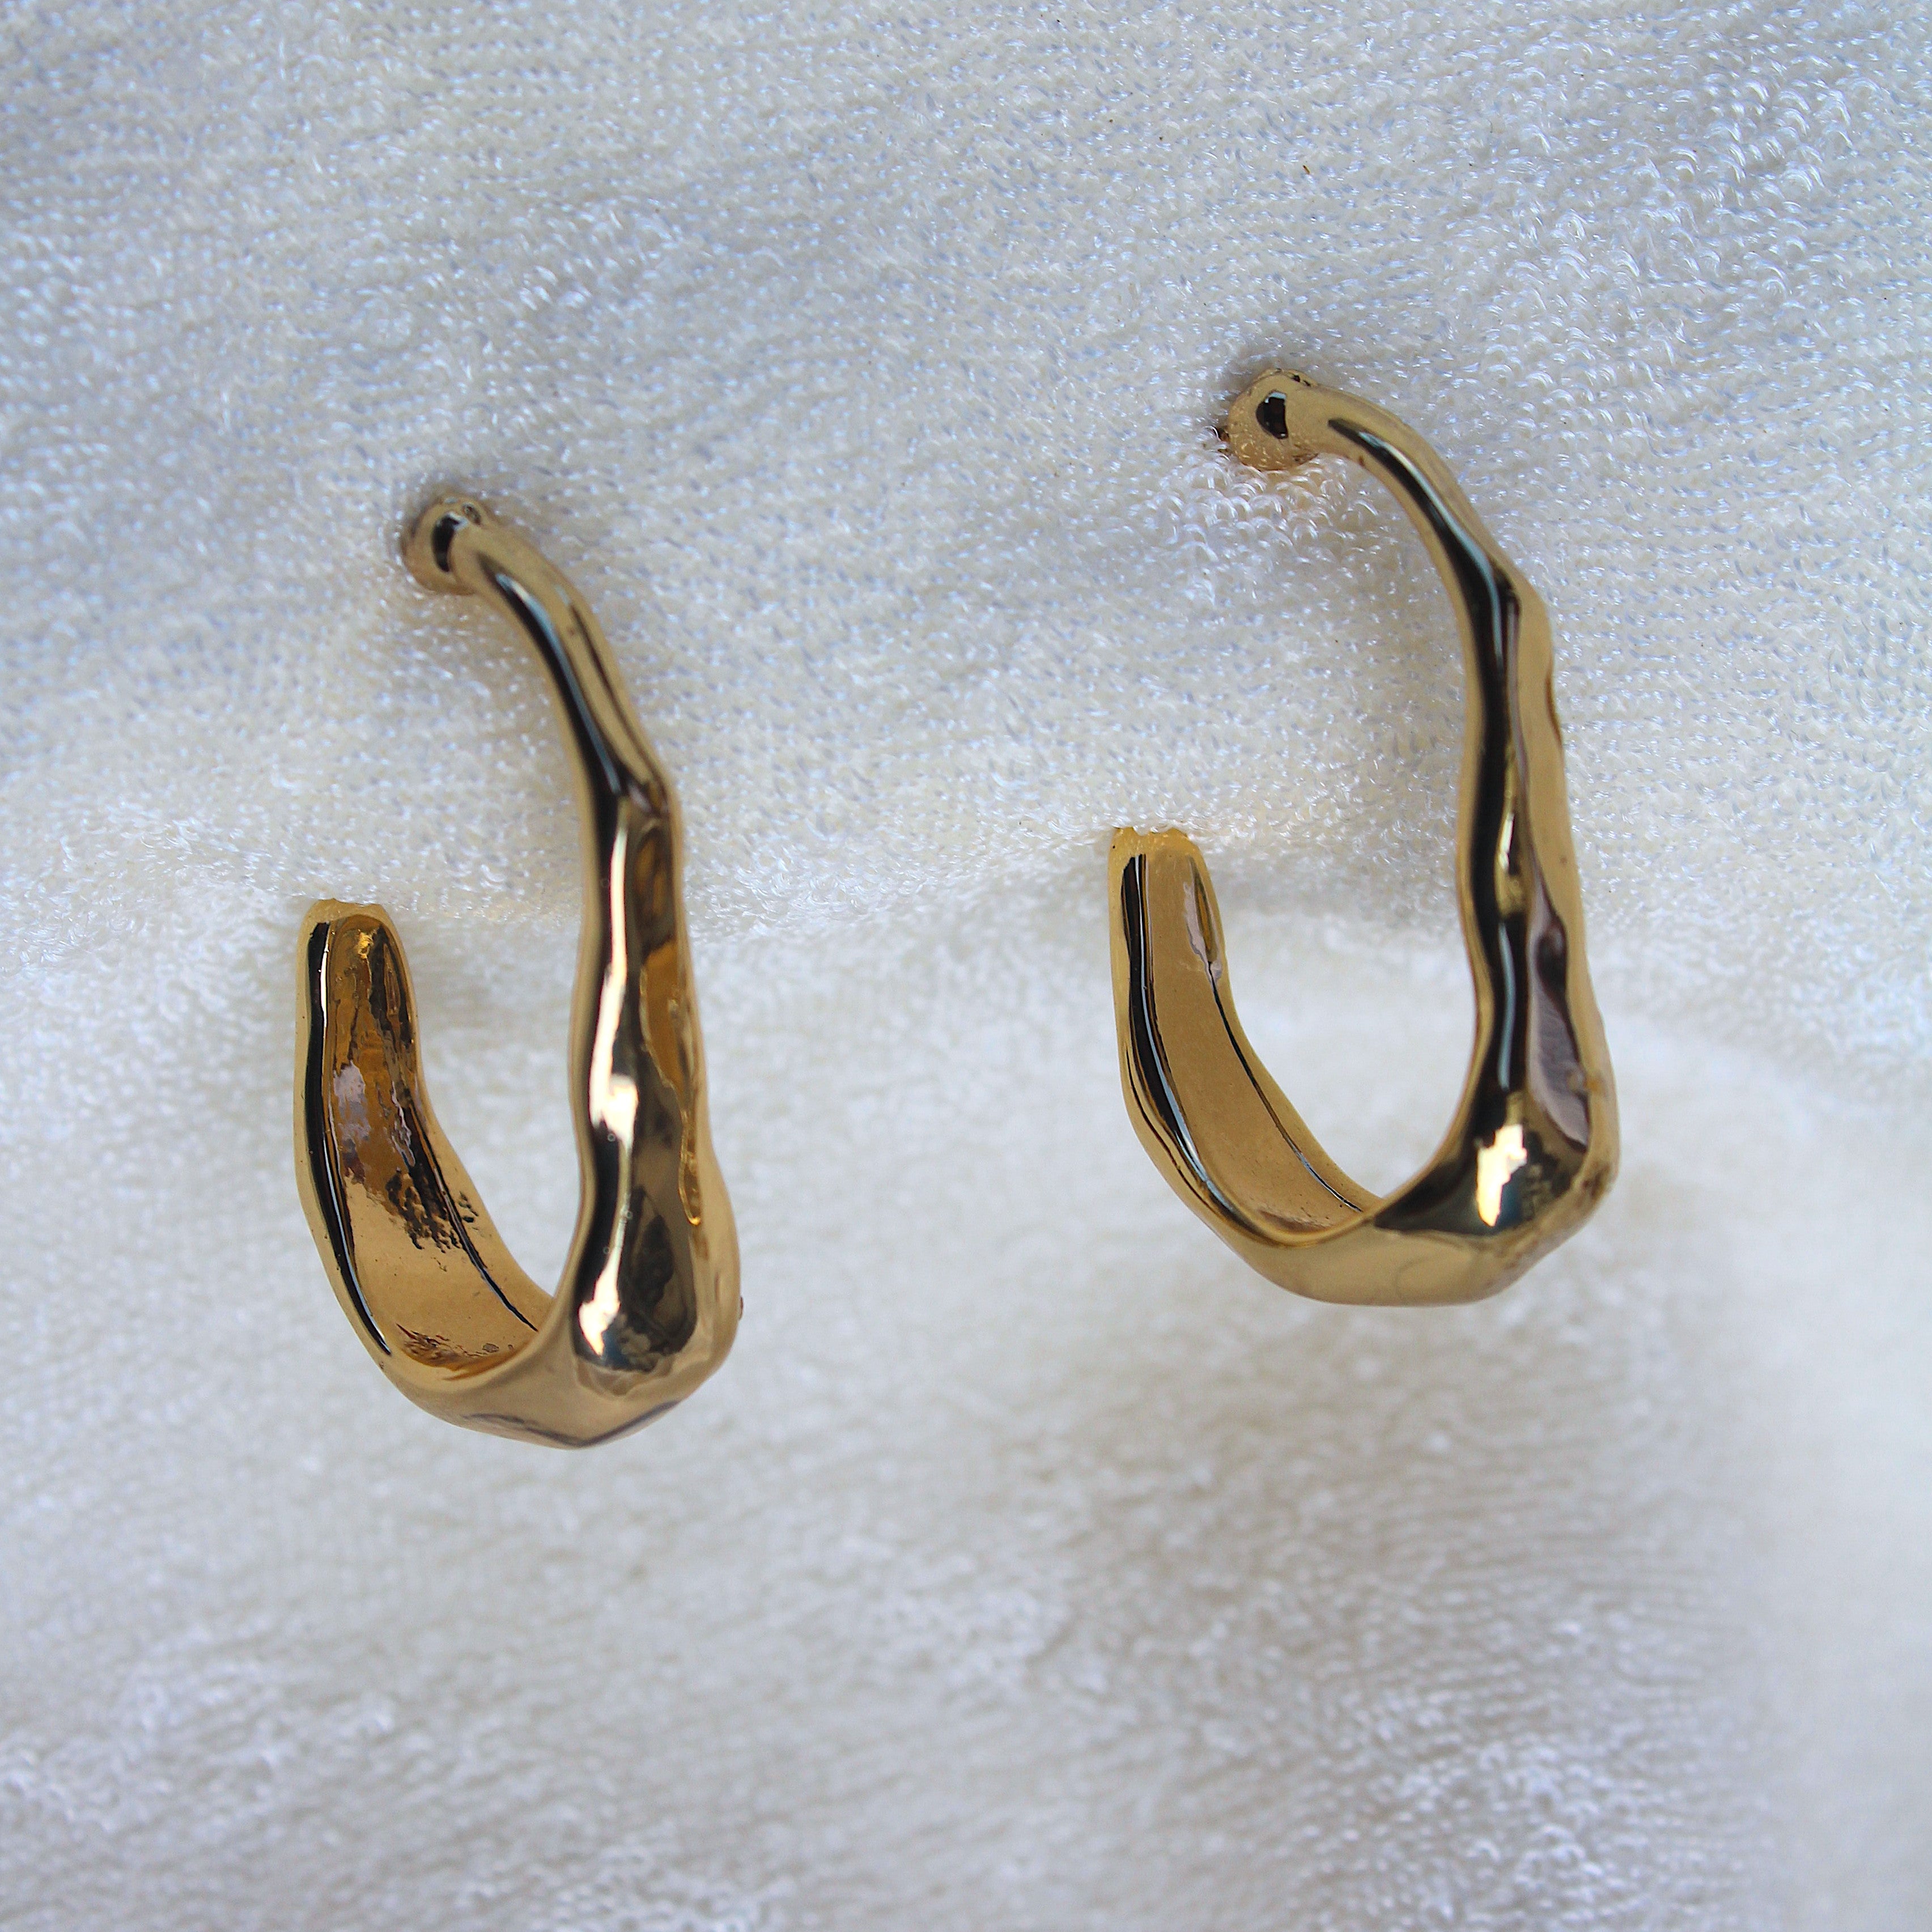 Girls Rainbow Hoop Earrings | Large Sterling Silver Hoop Earrings